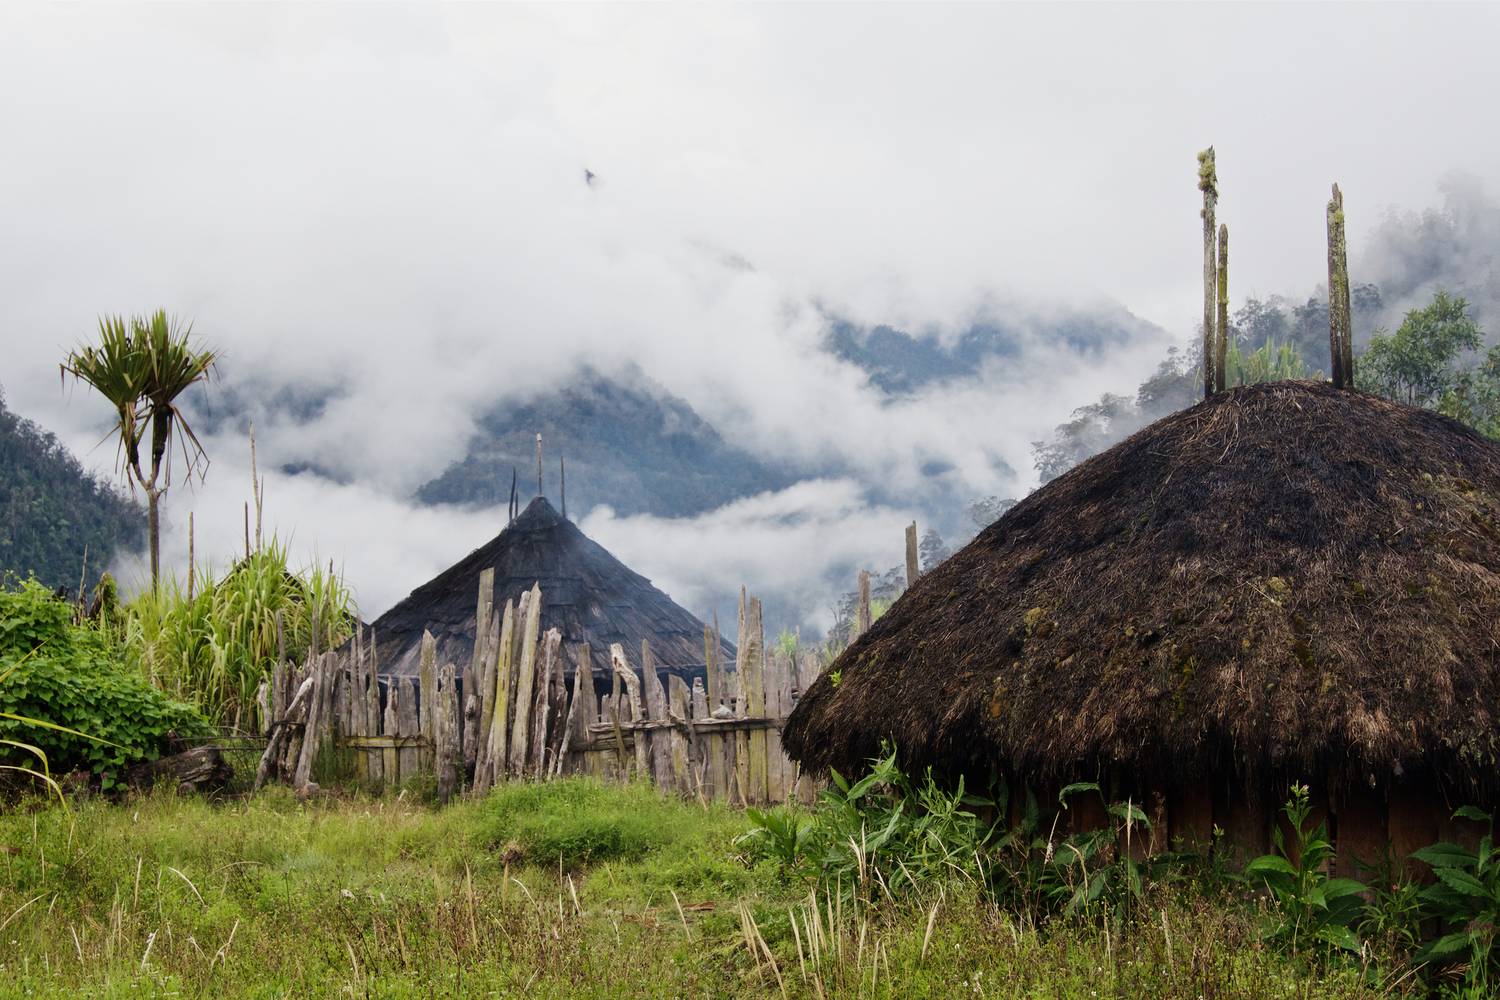 Indonéziában a honai nevet viselik a speciális, kör alakú házak, amiket falécekből, bambuszból és pálma levelekből raknak össze.